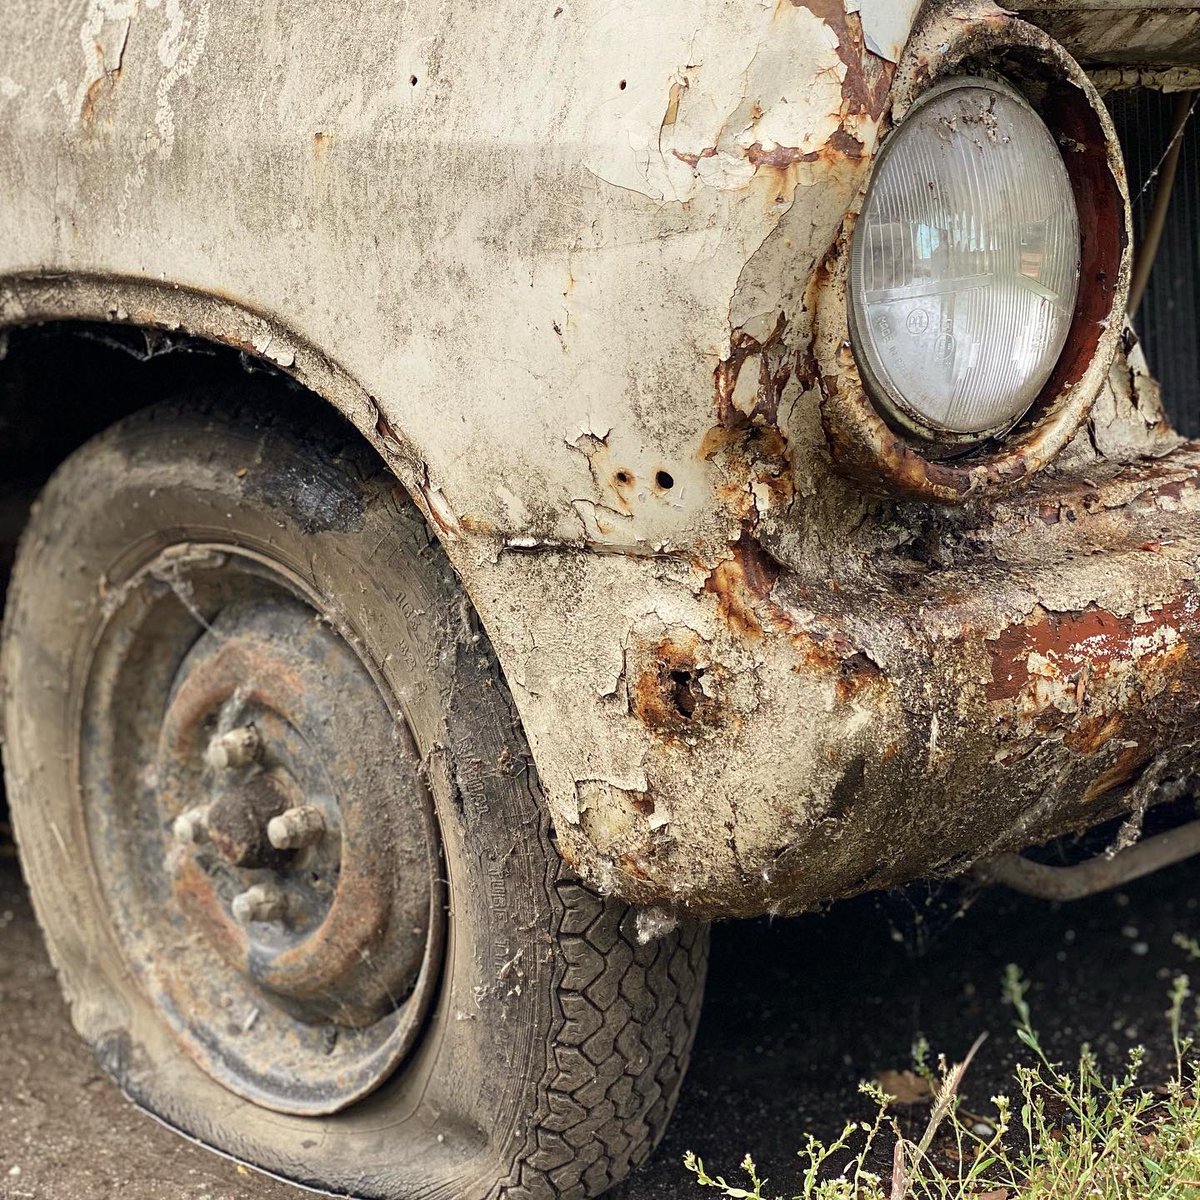 Rust in peace
Opel Rekord (A, 1963-5) spotted in Szentendre.
#OpelRekord #OpelRekordA #rustinpeace 
@GeorgeCochrane1 @addict_car @Rockstarscars @YesterdaysDrive